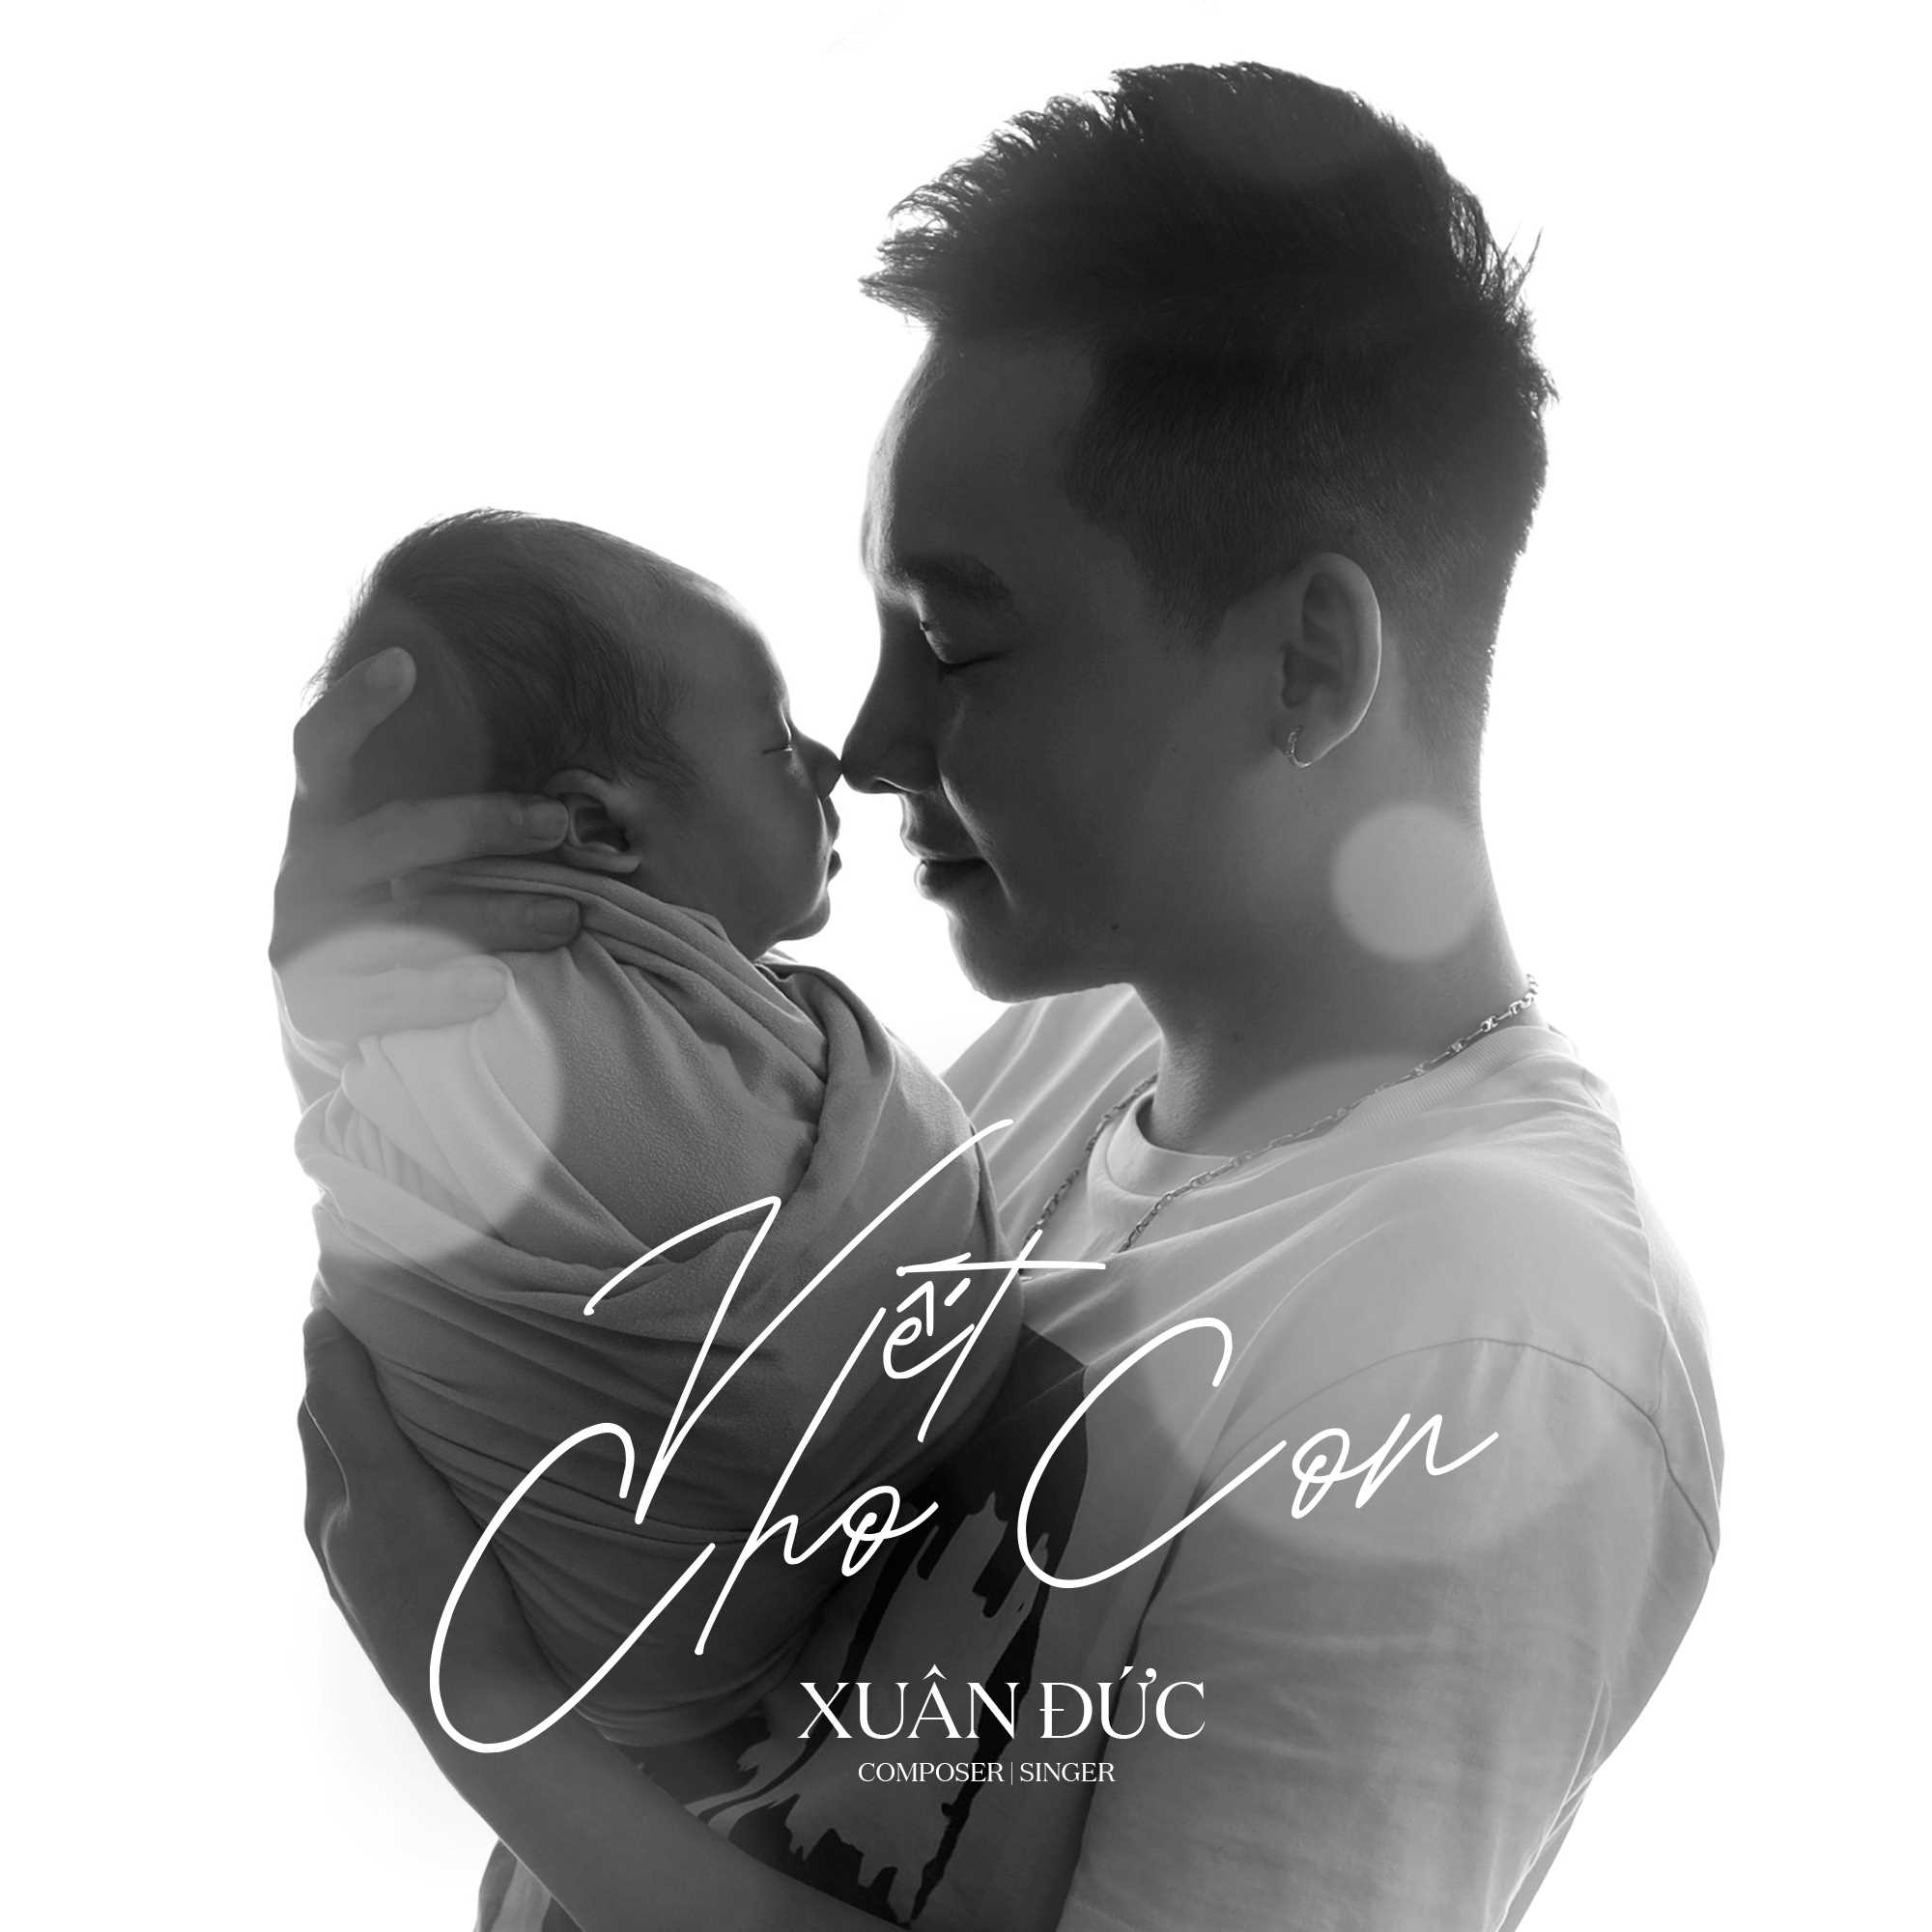 Poster ca khúc “Viết Cho Con”